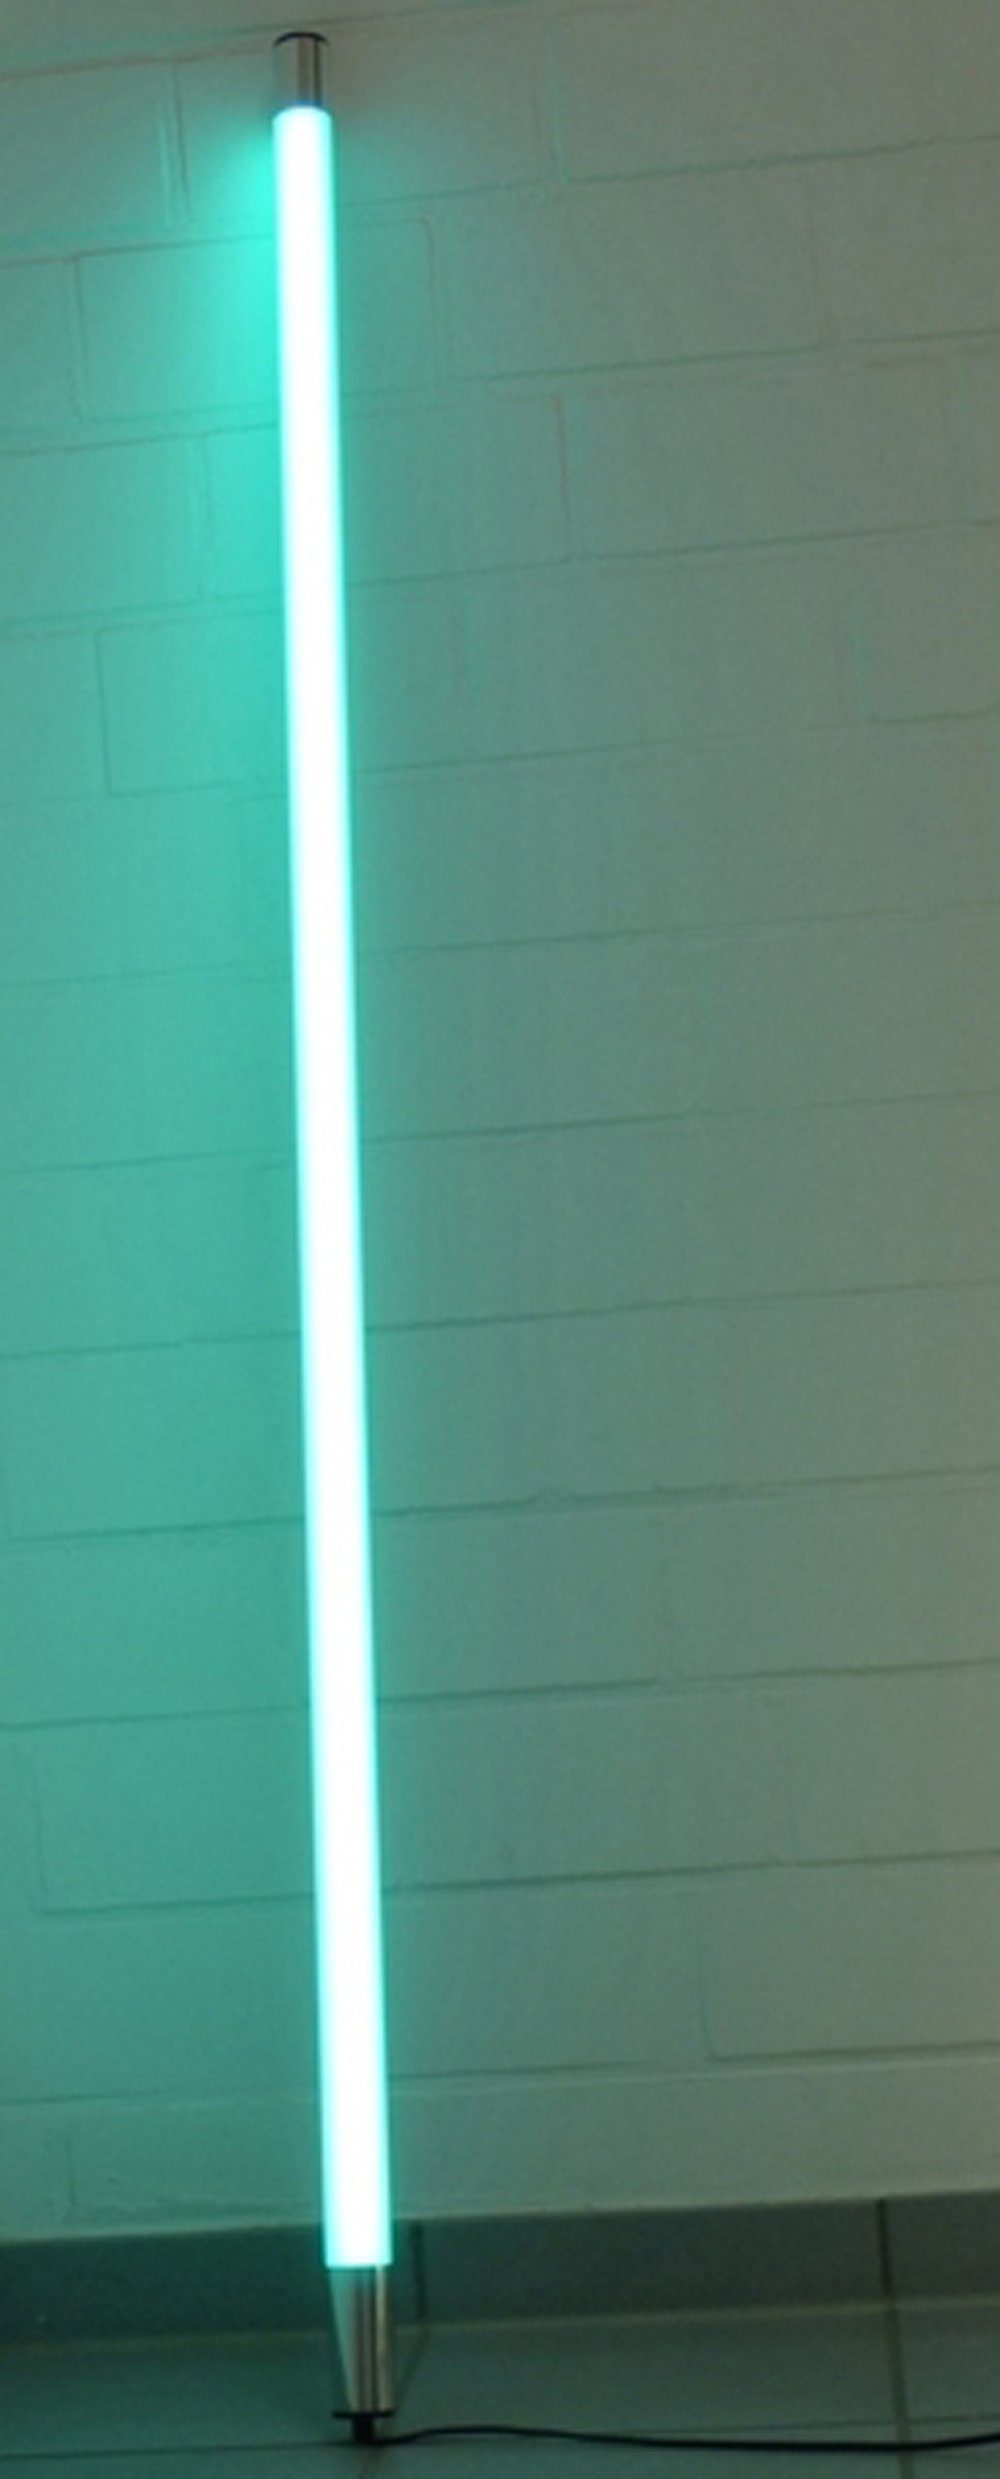 XENON LED Wandleuchte 6861 LED Leuchtstab Satiniert 0,63m Länge 950 Lumen IP20 Innen Türkis, LED Röhre T8, Xenon